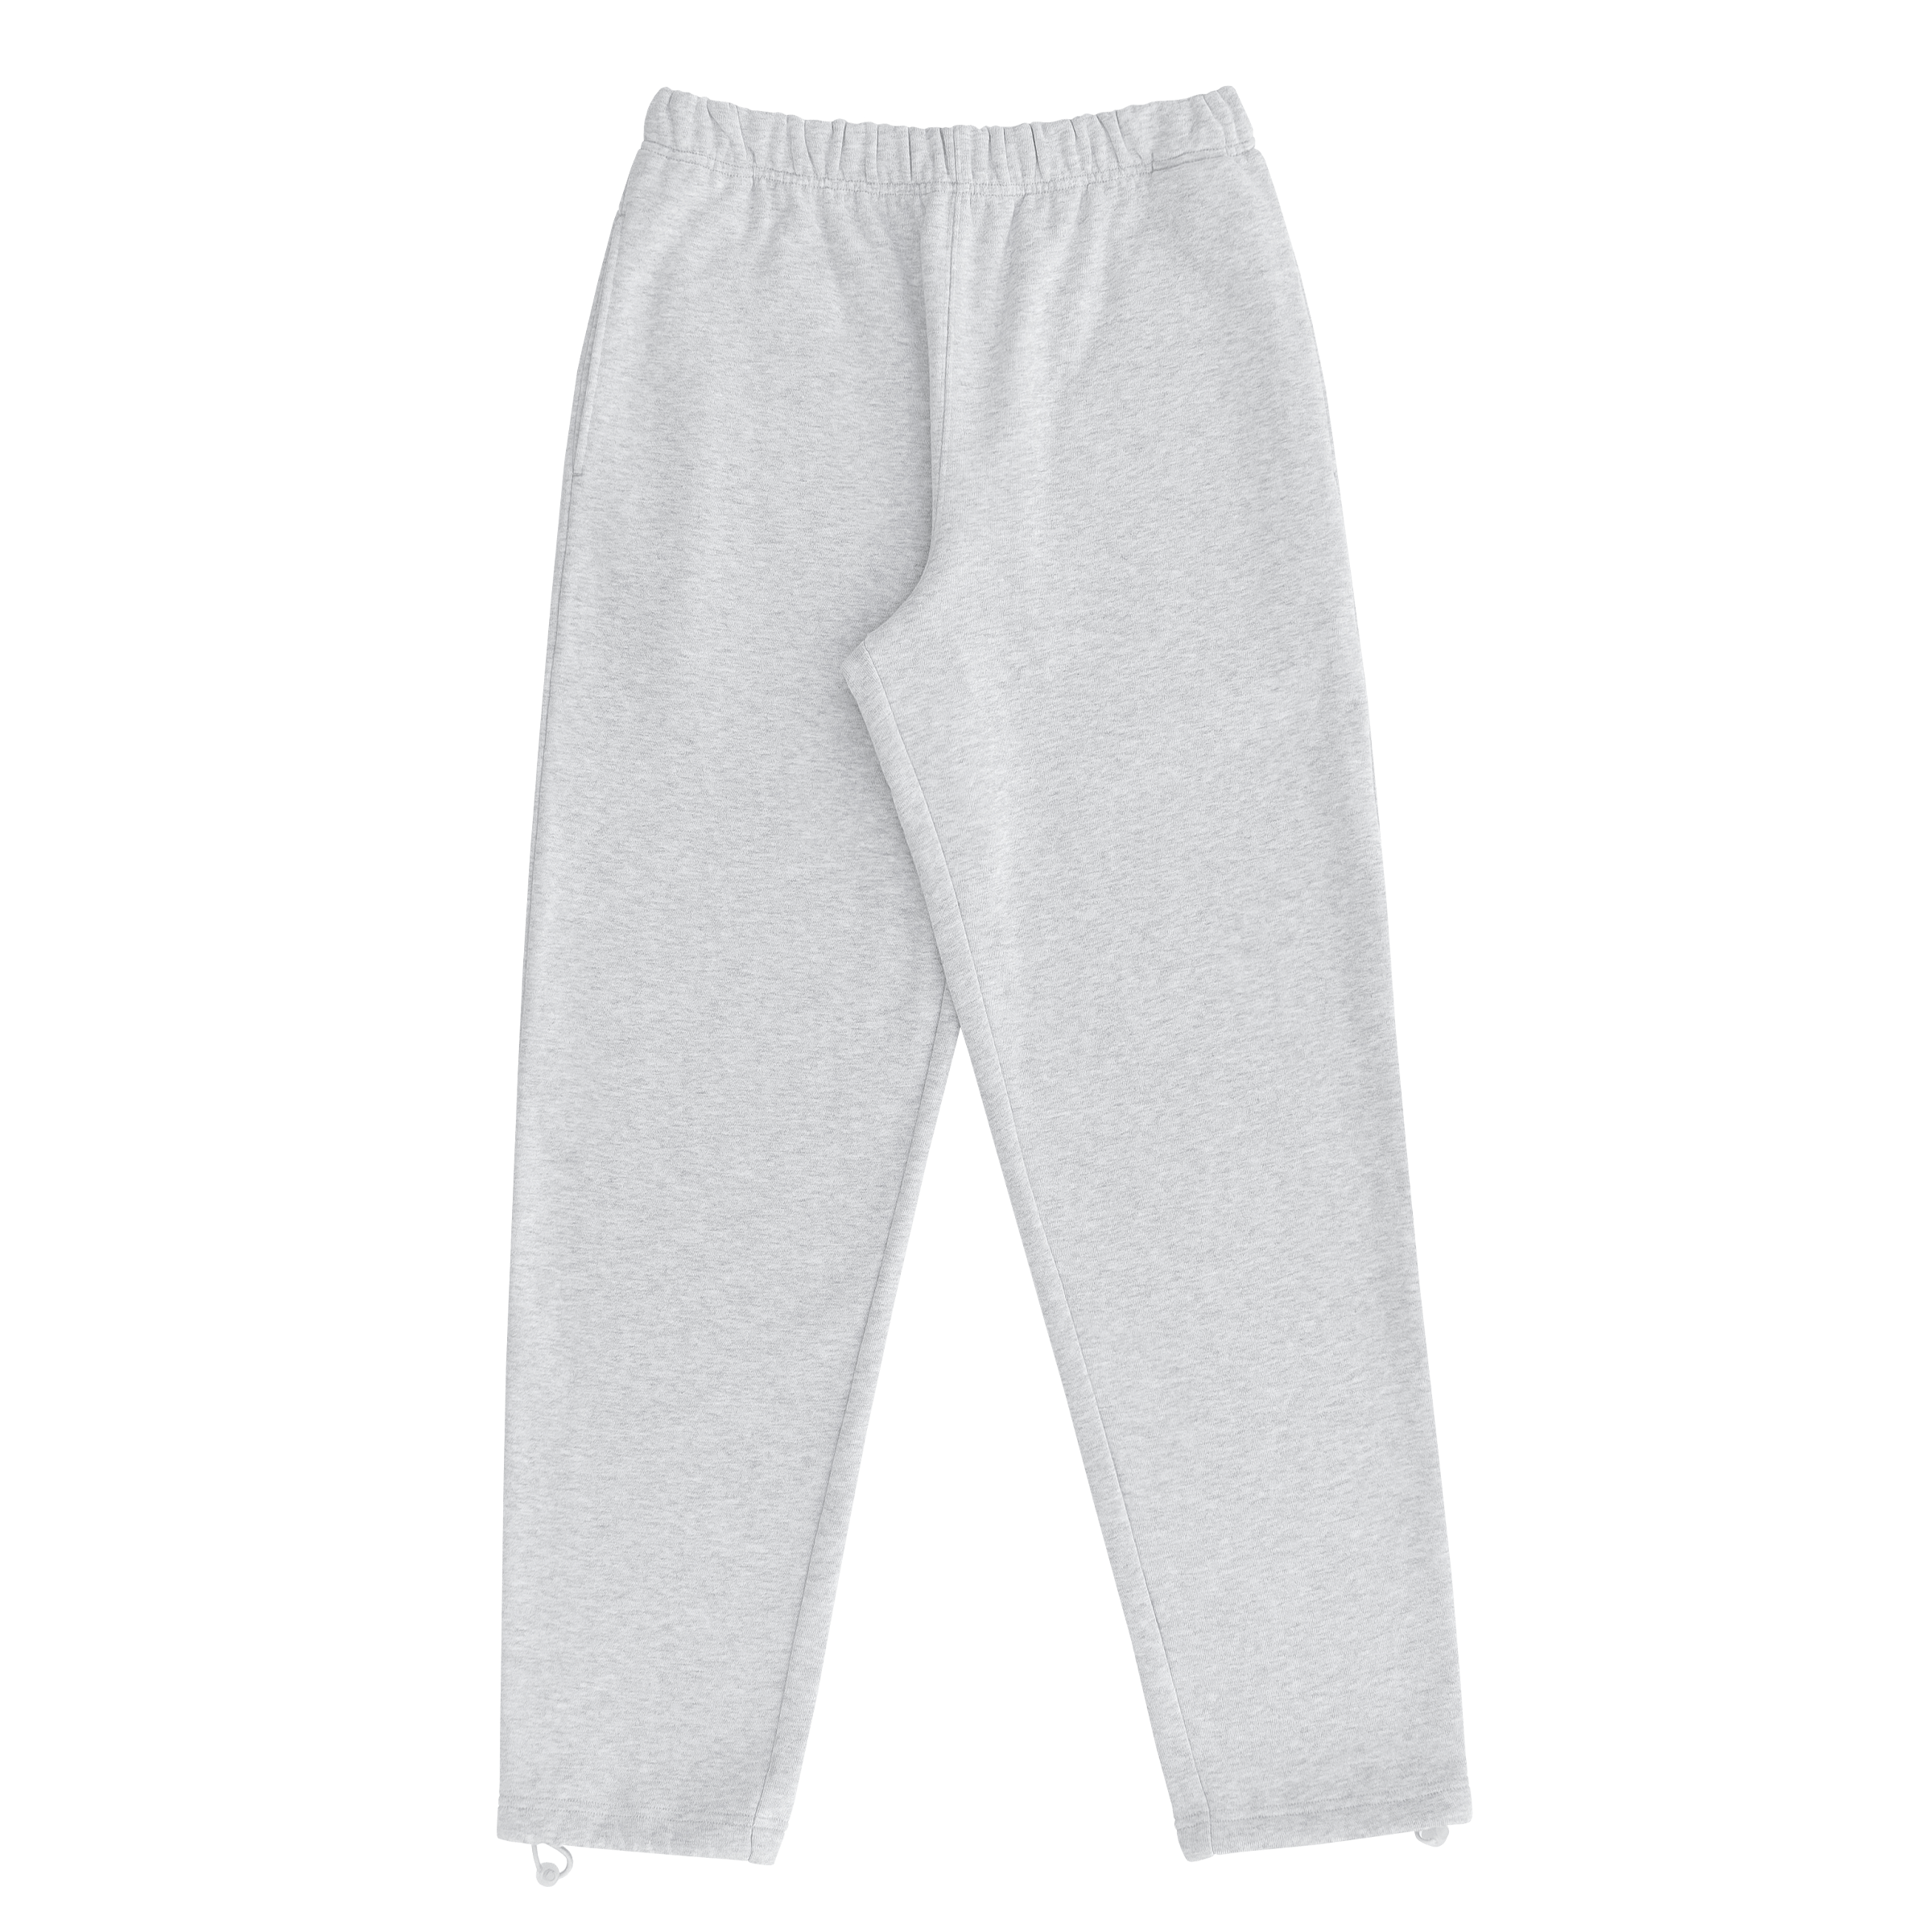 365 Midweight Straight Leg Track Pants - Off-white - Pangaia